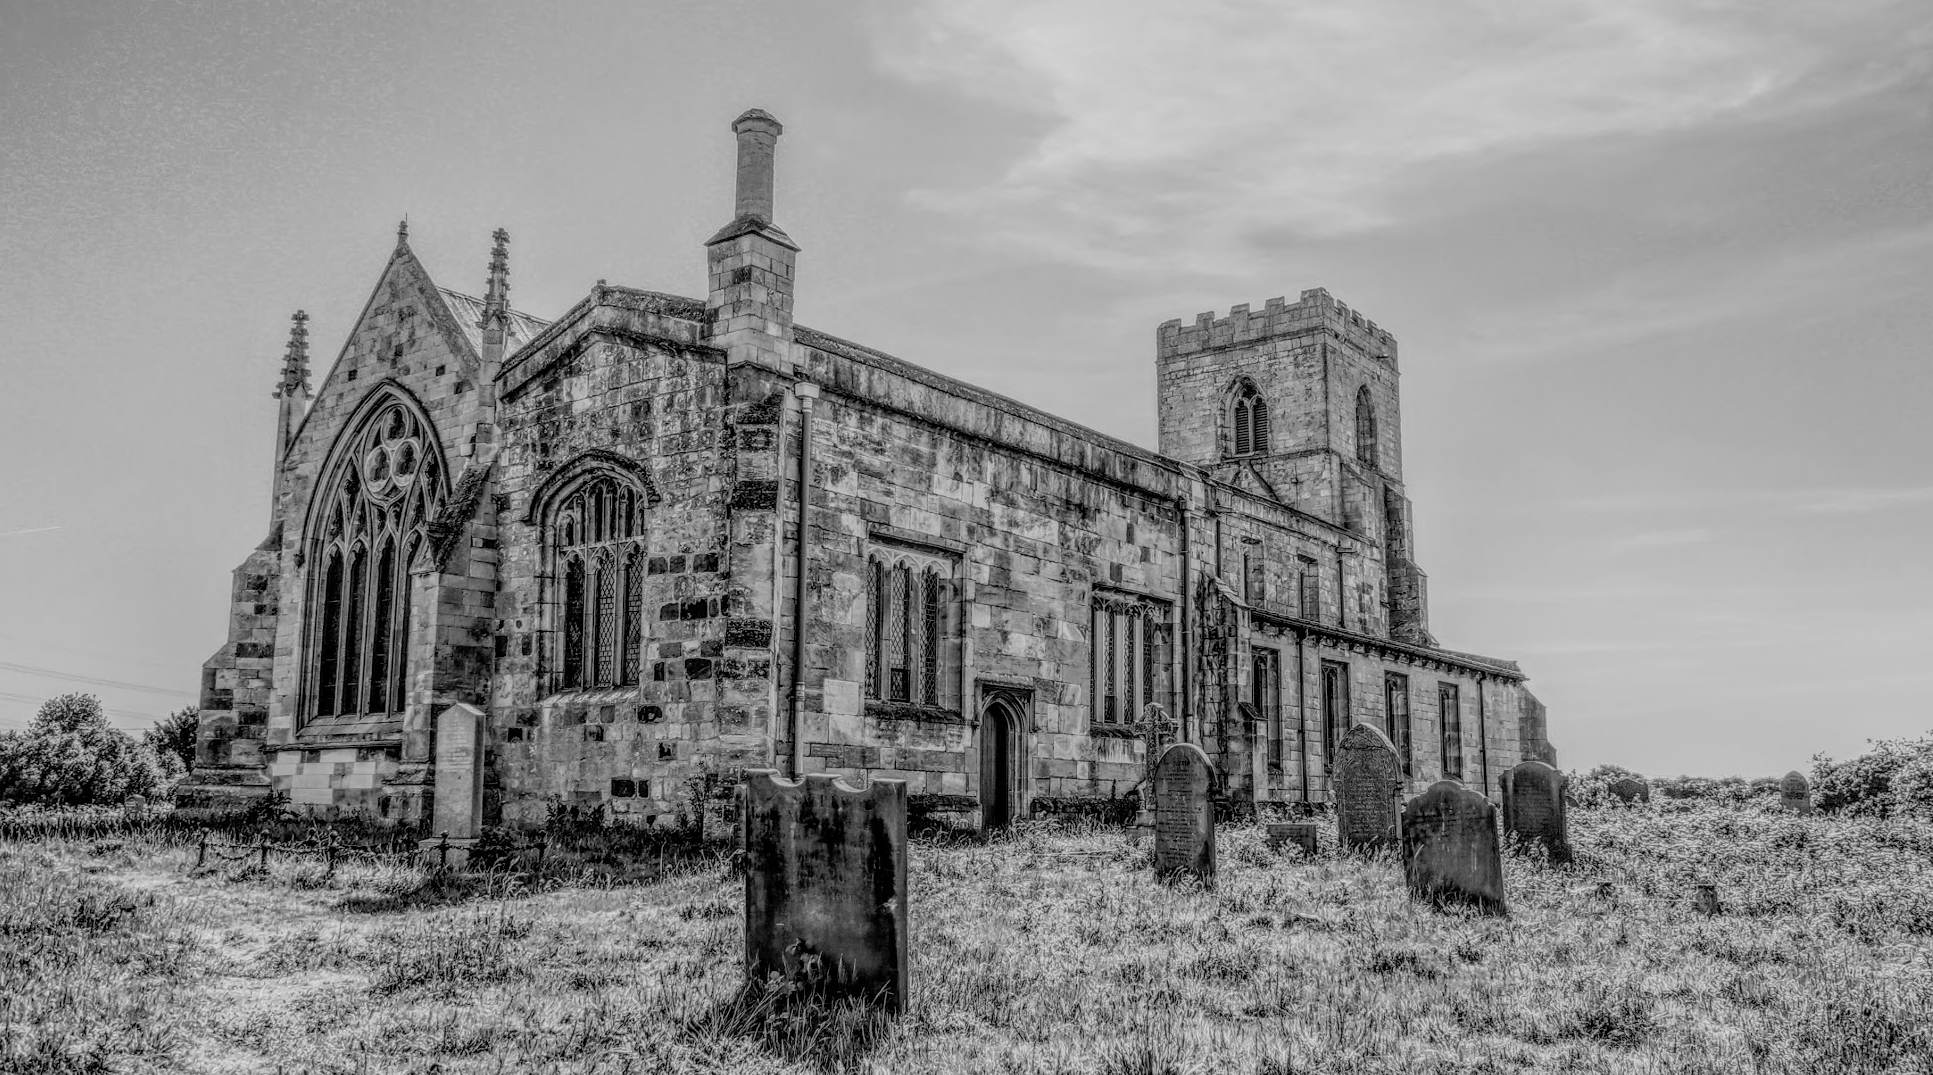 St Edmunds church - Spooky monochrome